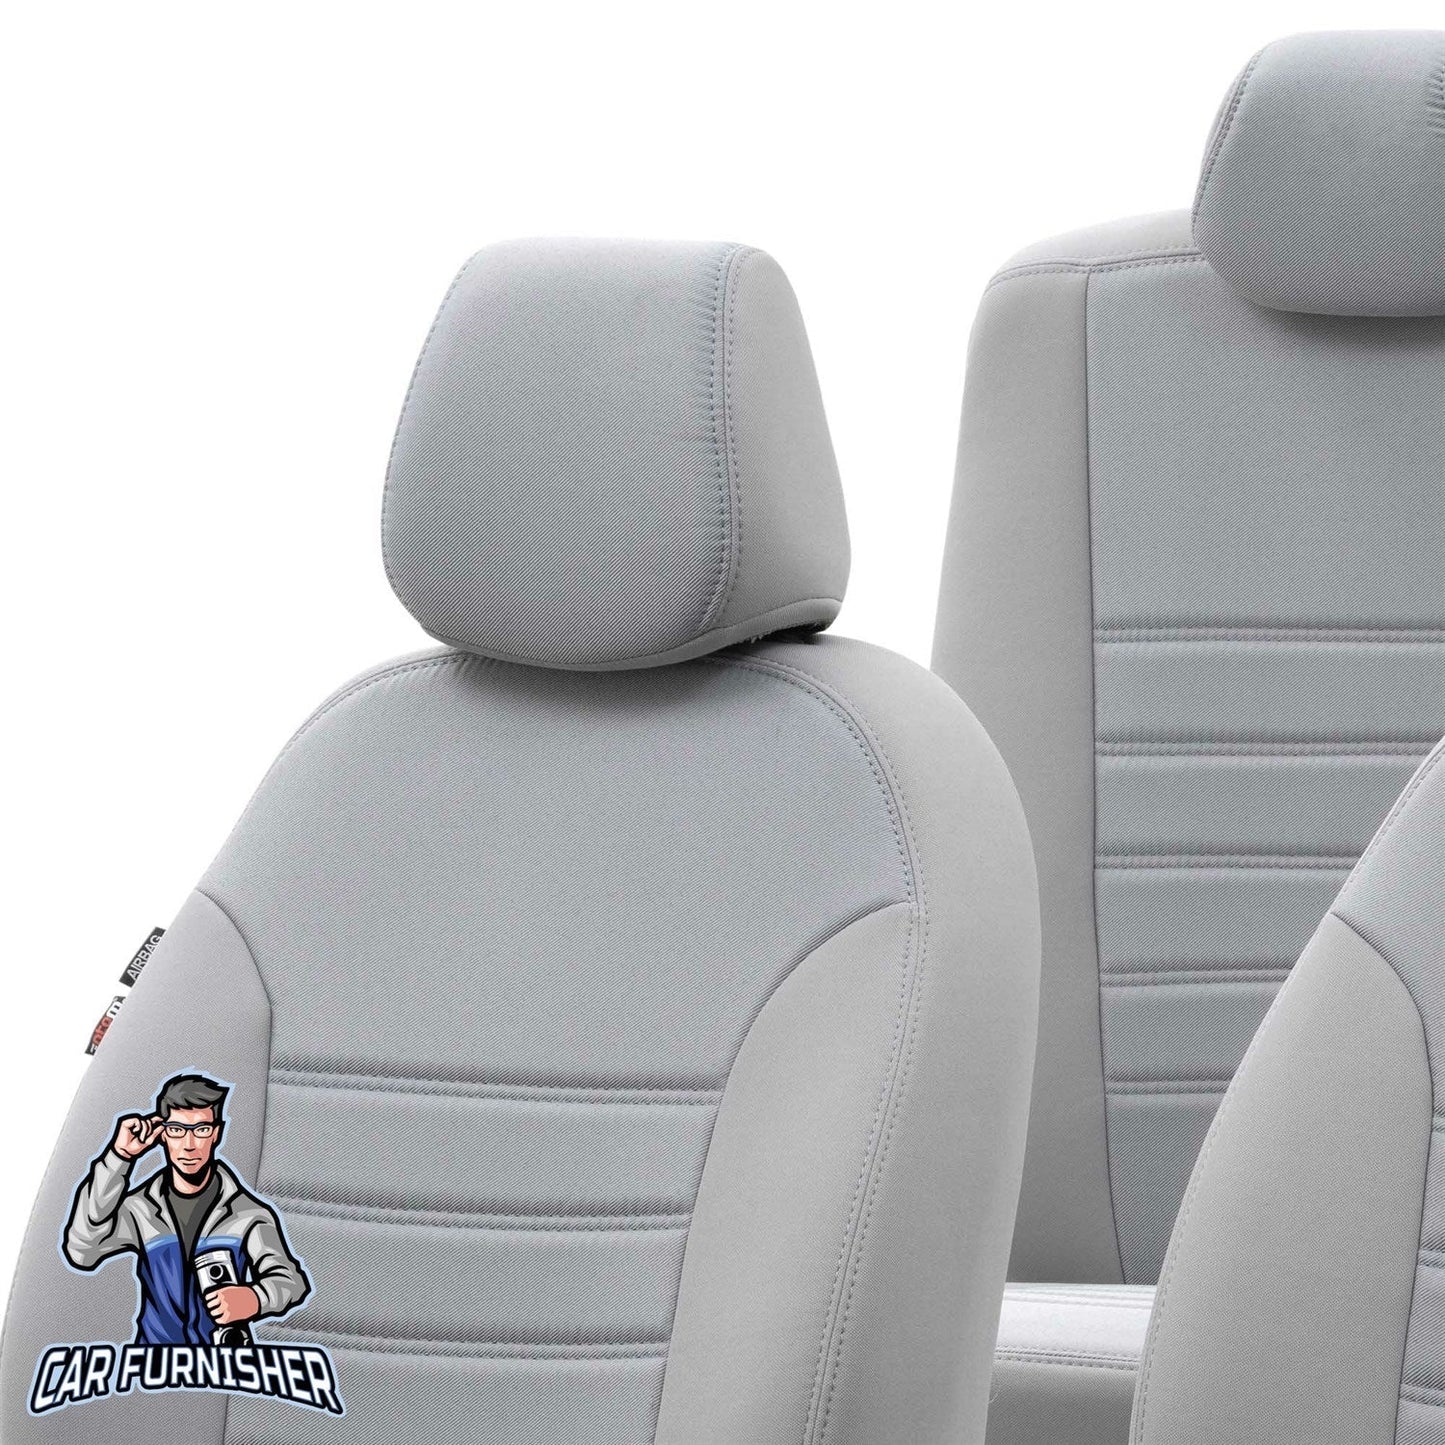 Bmw 1 Series Seat Cover Original Jacquard Design Light Gray Jacquard Fabric